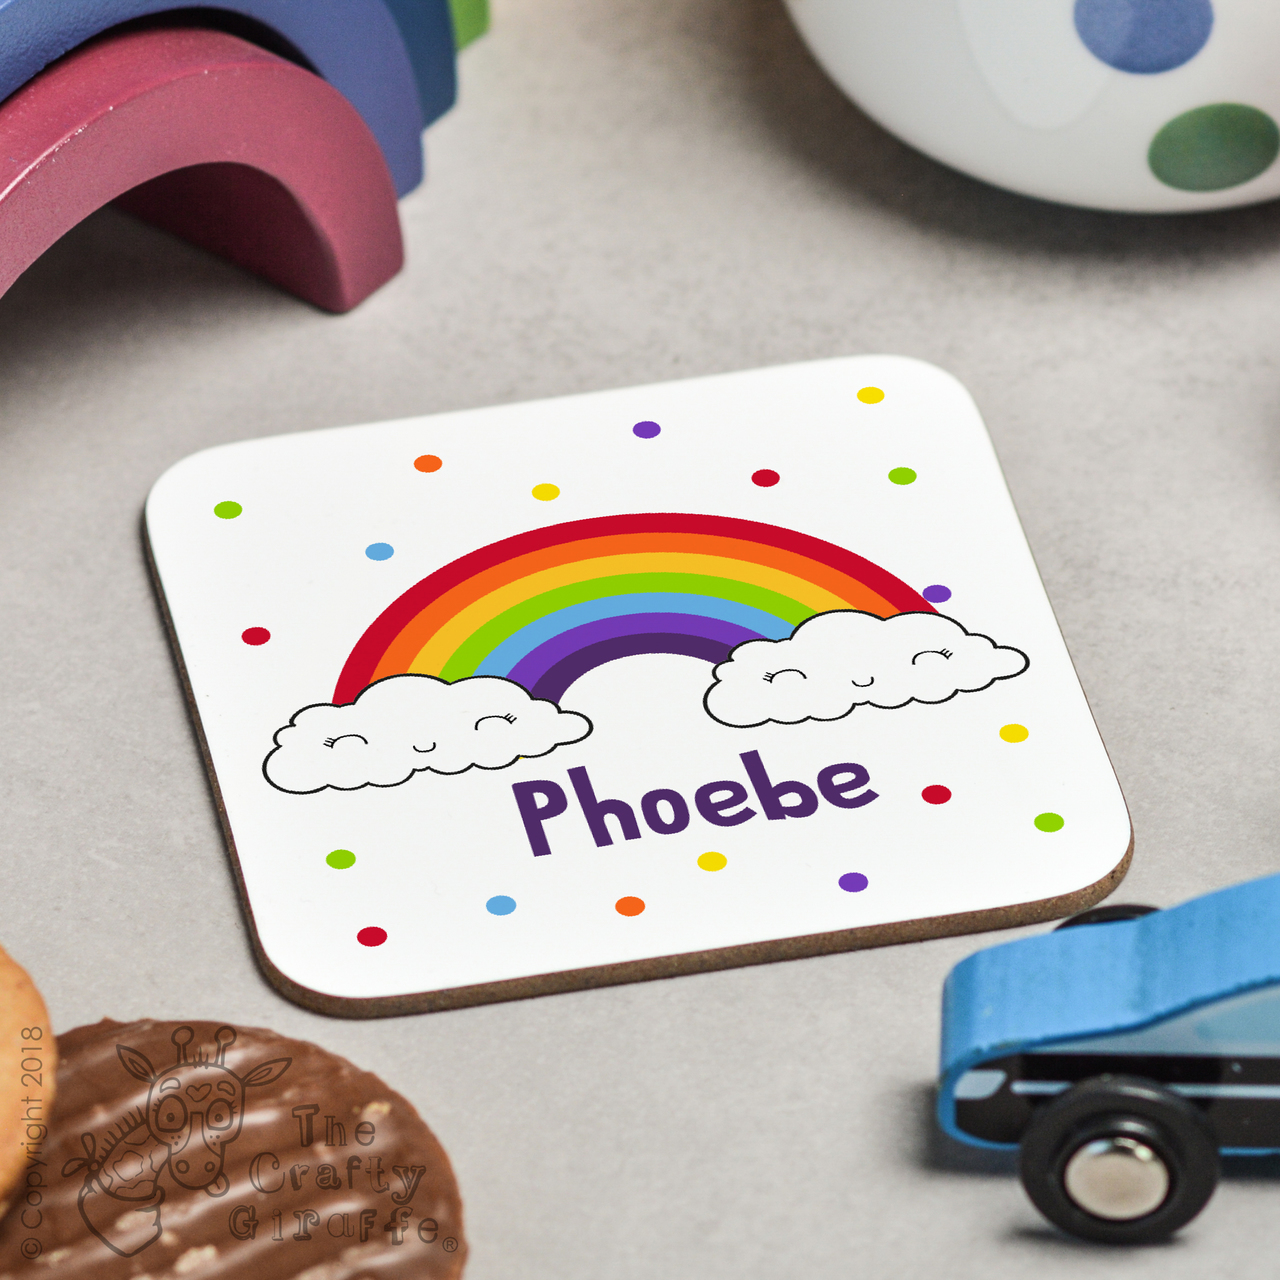 Personalised Rainbow Coaster